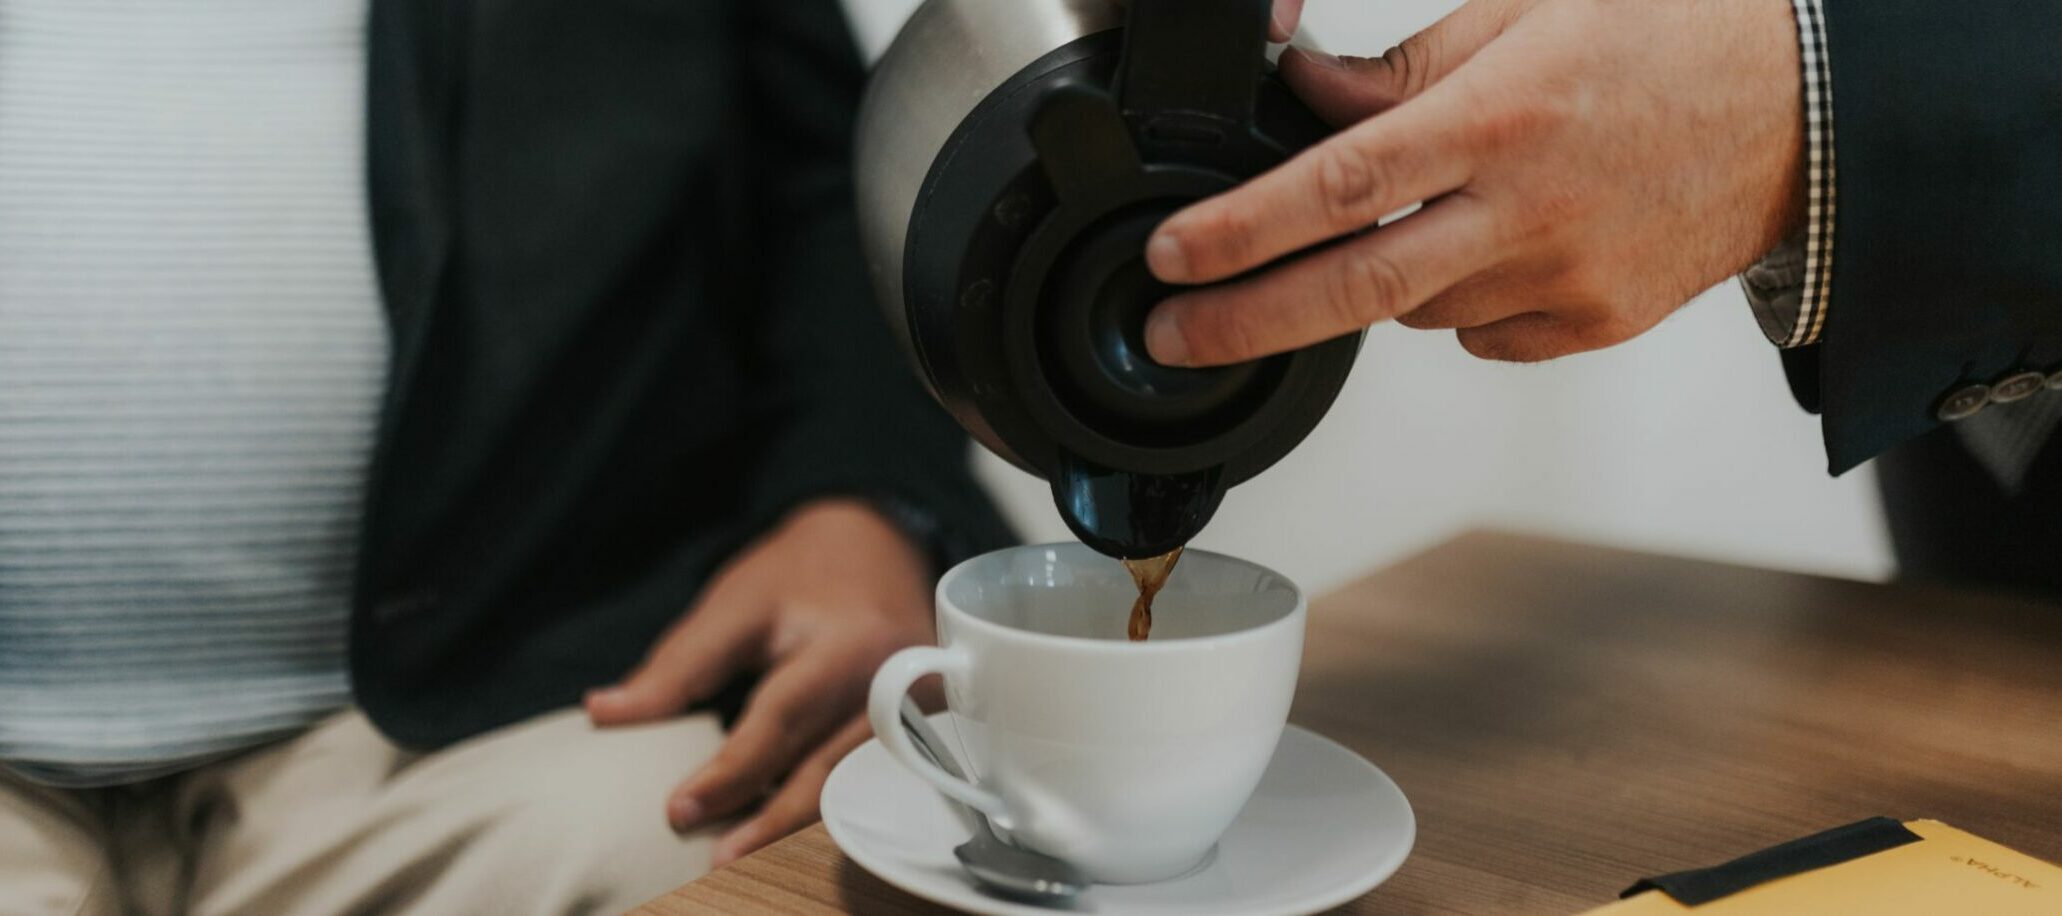 Kaffee wird in eine Tasse hineingeschüttet